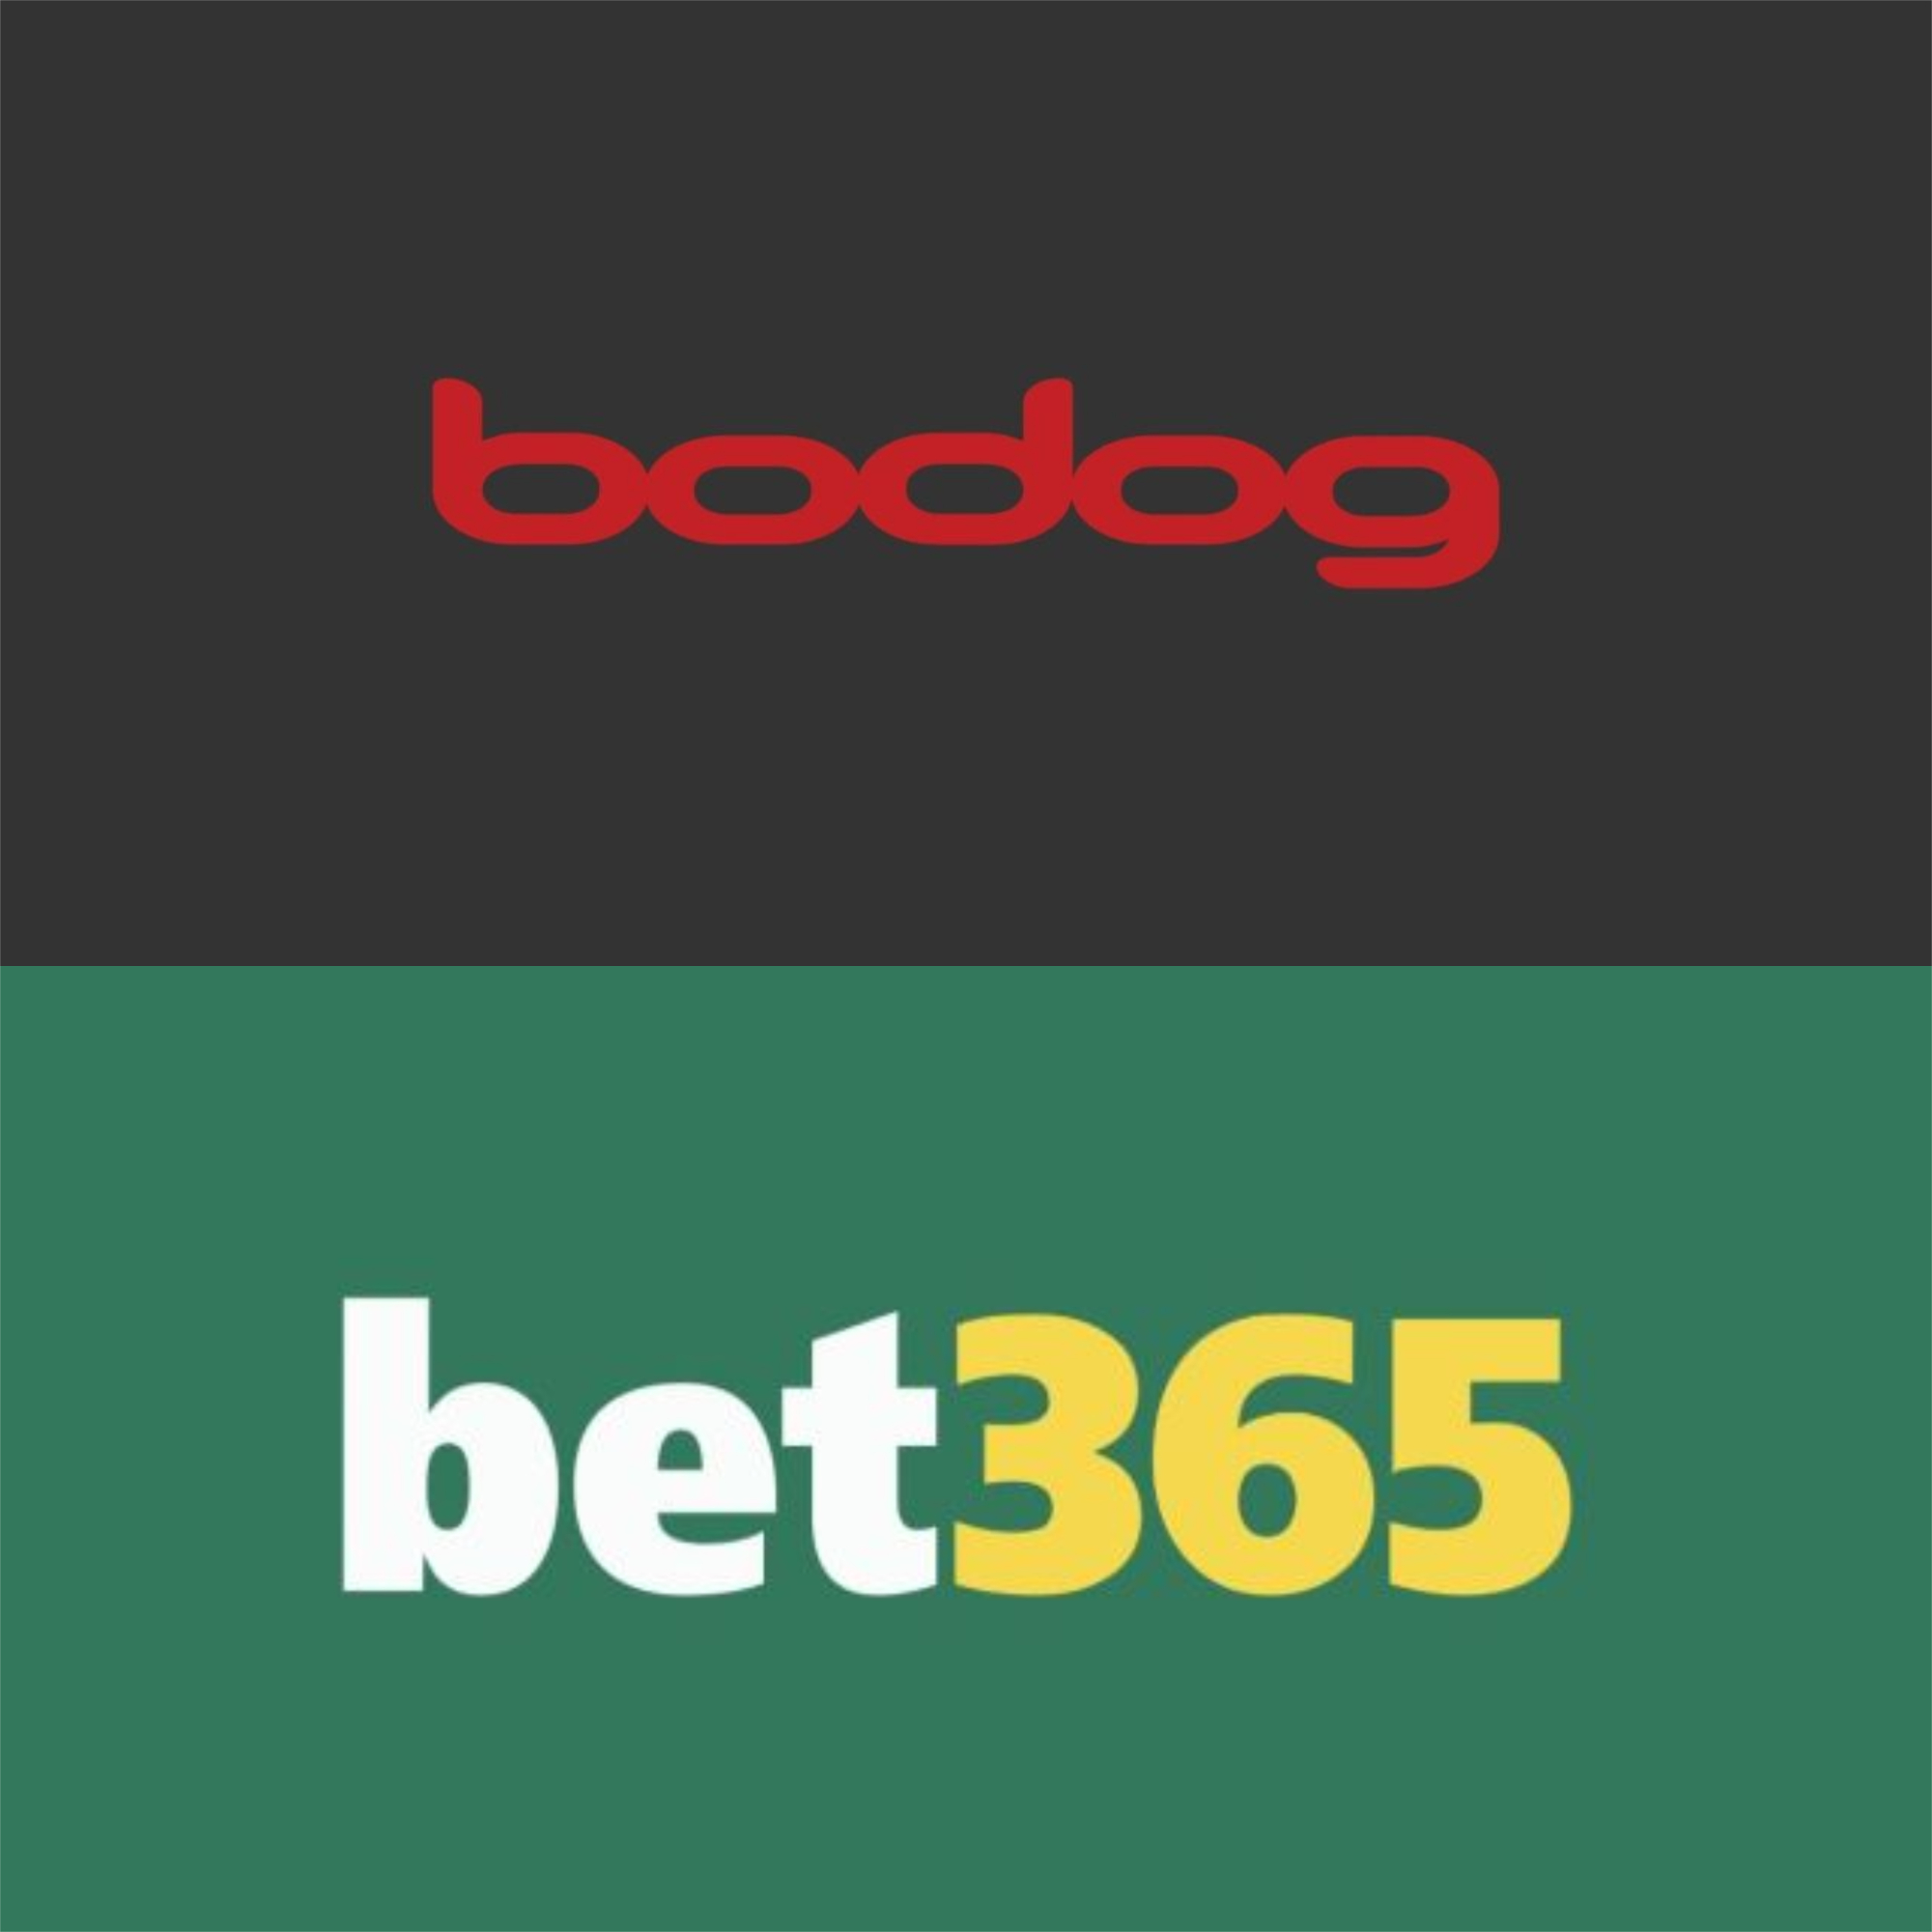 Bodog ou Bet365: Qual a Melhor Casa de Apostas